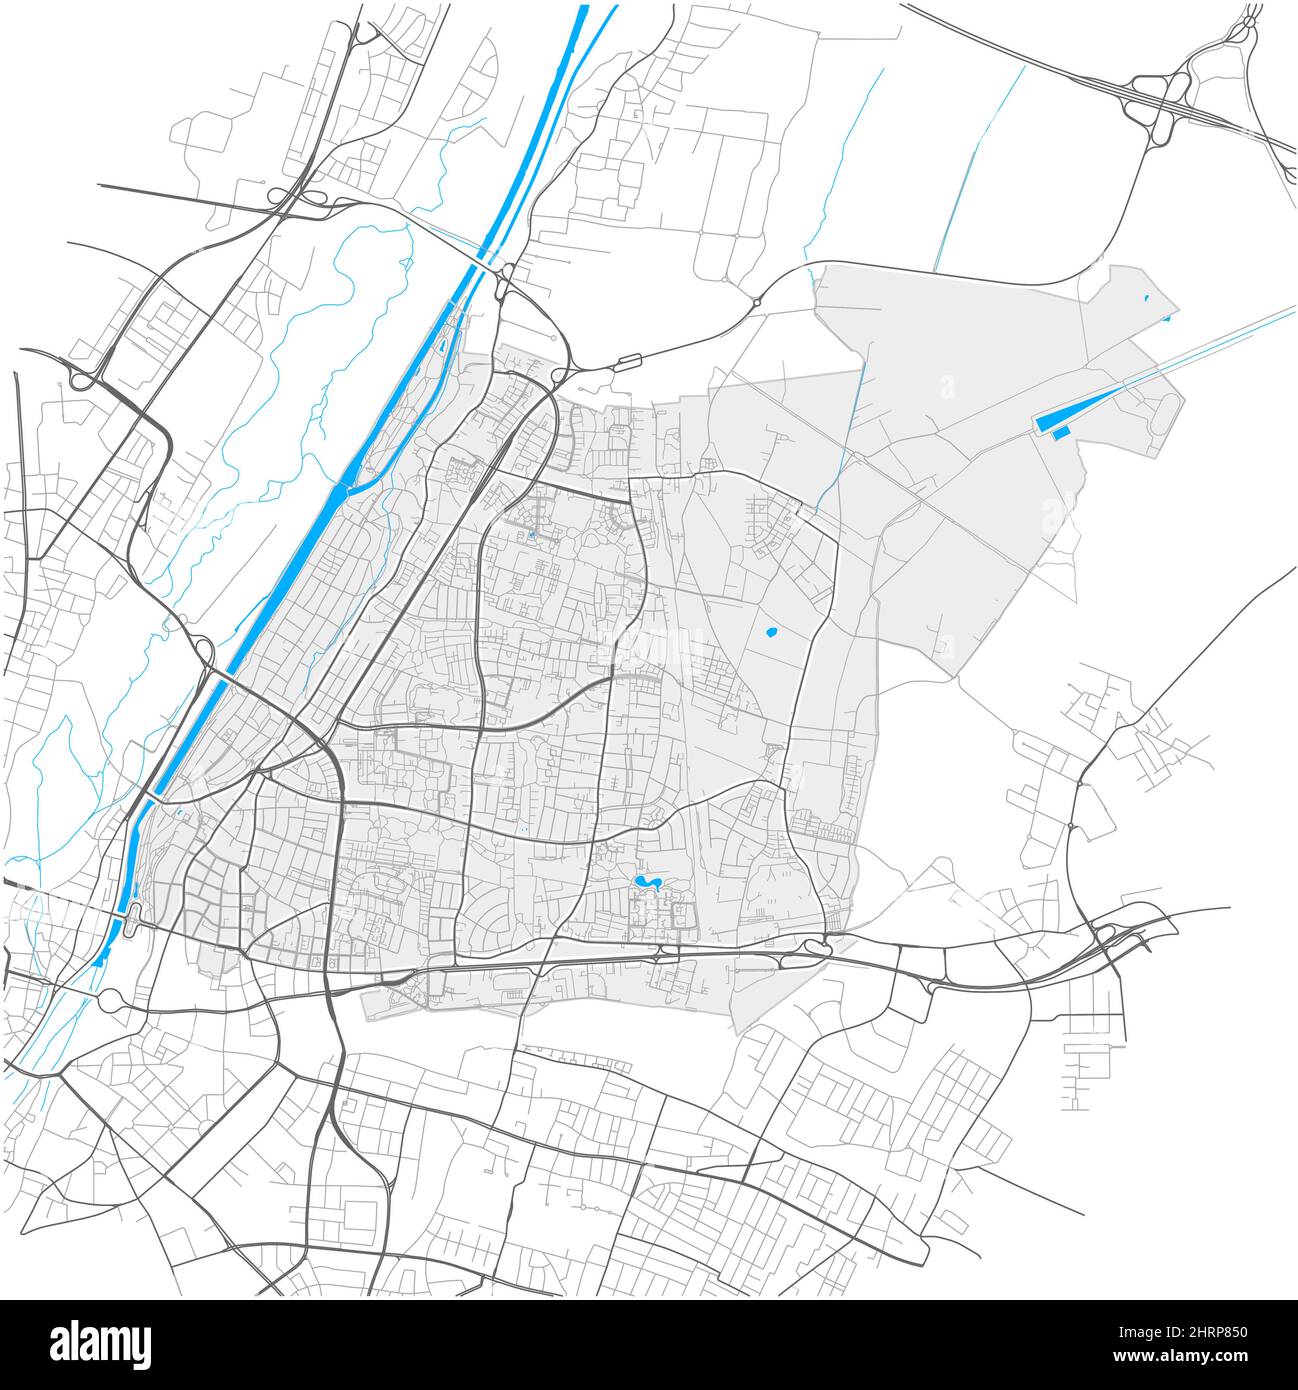 Bogenhausen, München, DEUTSCHLAND, hochdetaillierte Vektorkarte mit Stadtgrenzen und editierbaren Pfaden. Weiße Umrisse für Hauptstraßen. Viele kleinere Wege. Stock Vektor